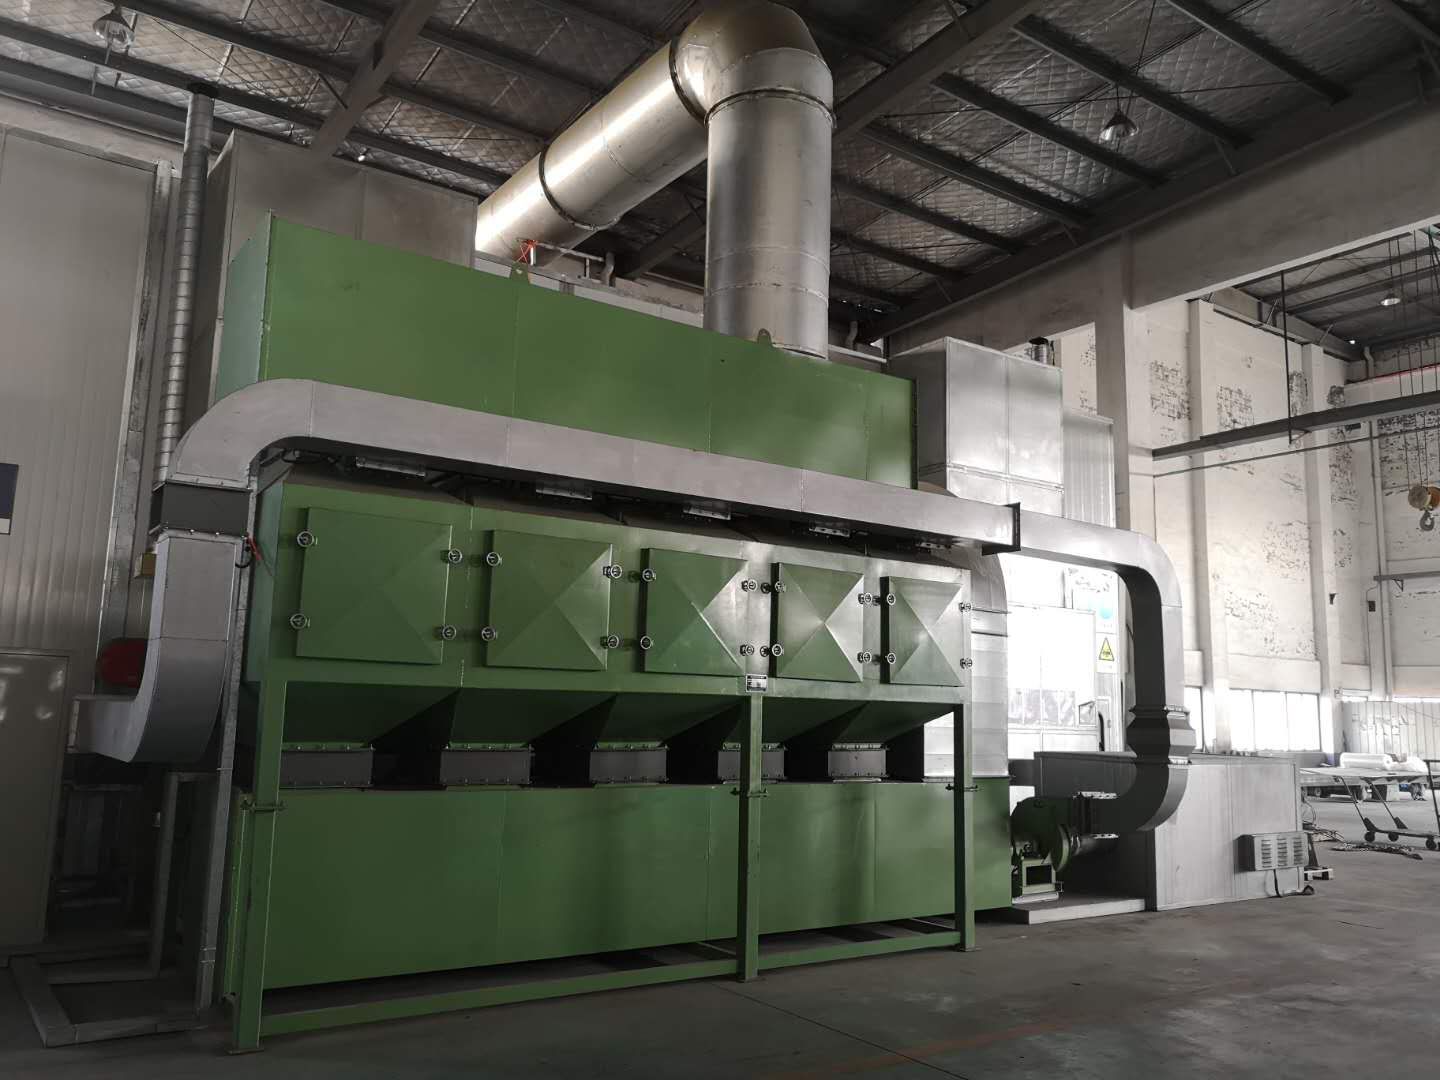 盐城福斯泰环保设备有限公司在杭州萧山的配套定制废气处理设备圆满竣工